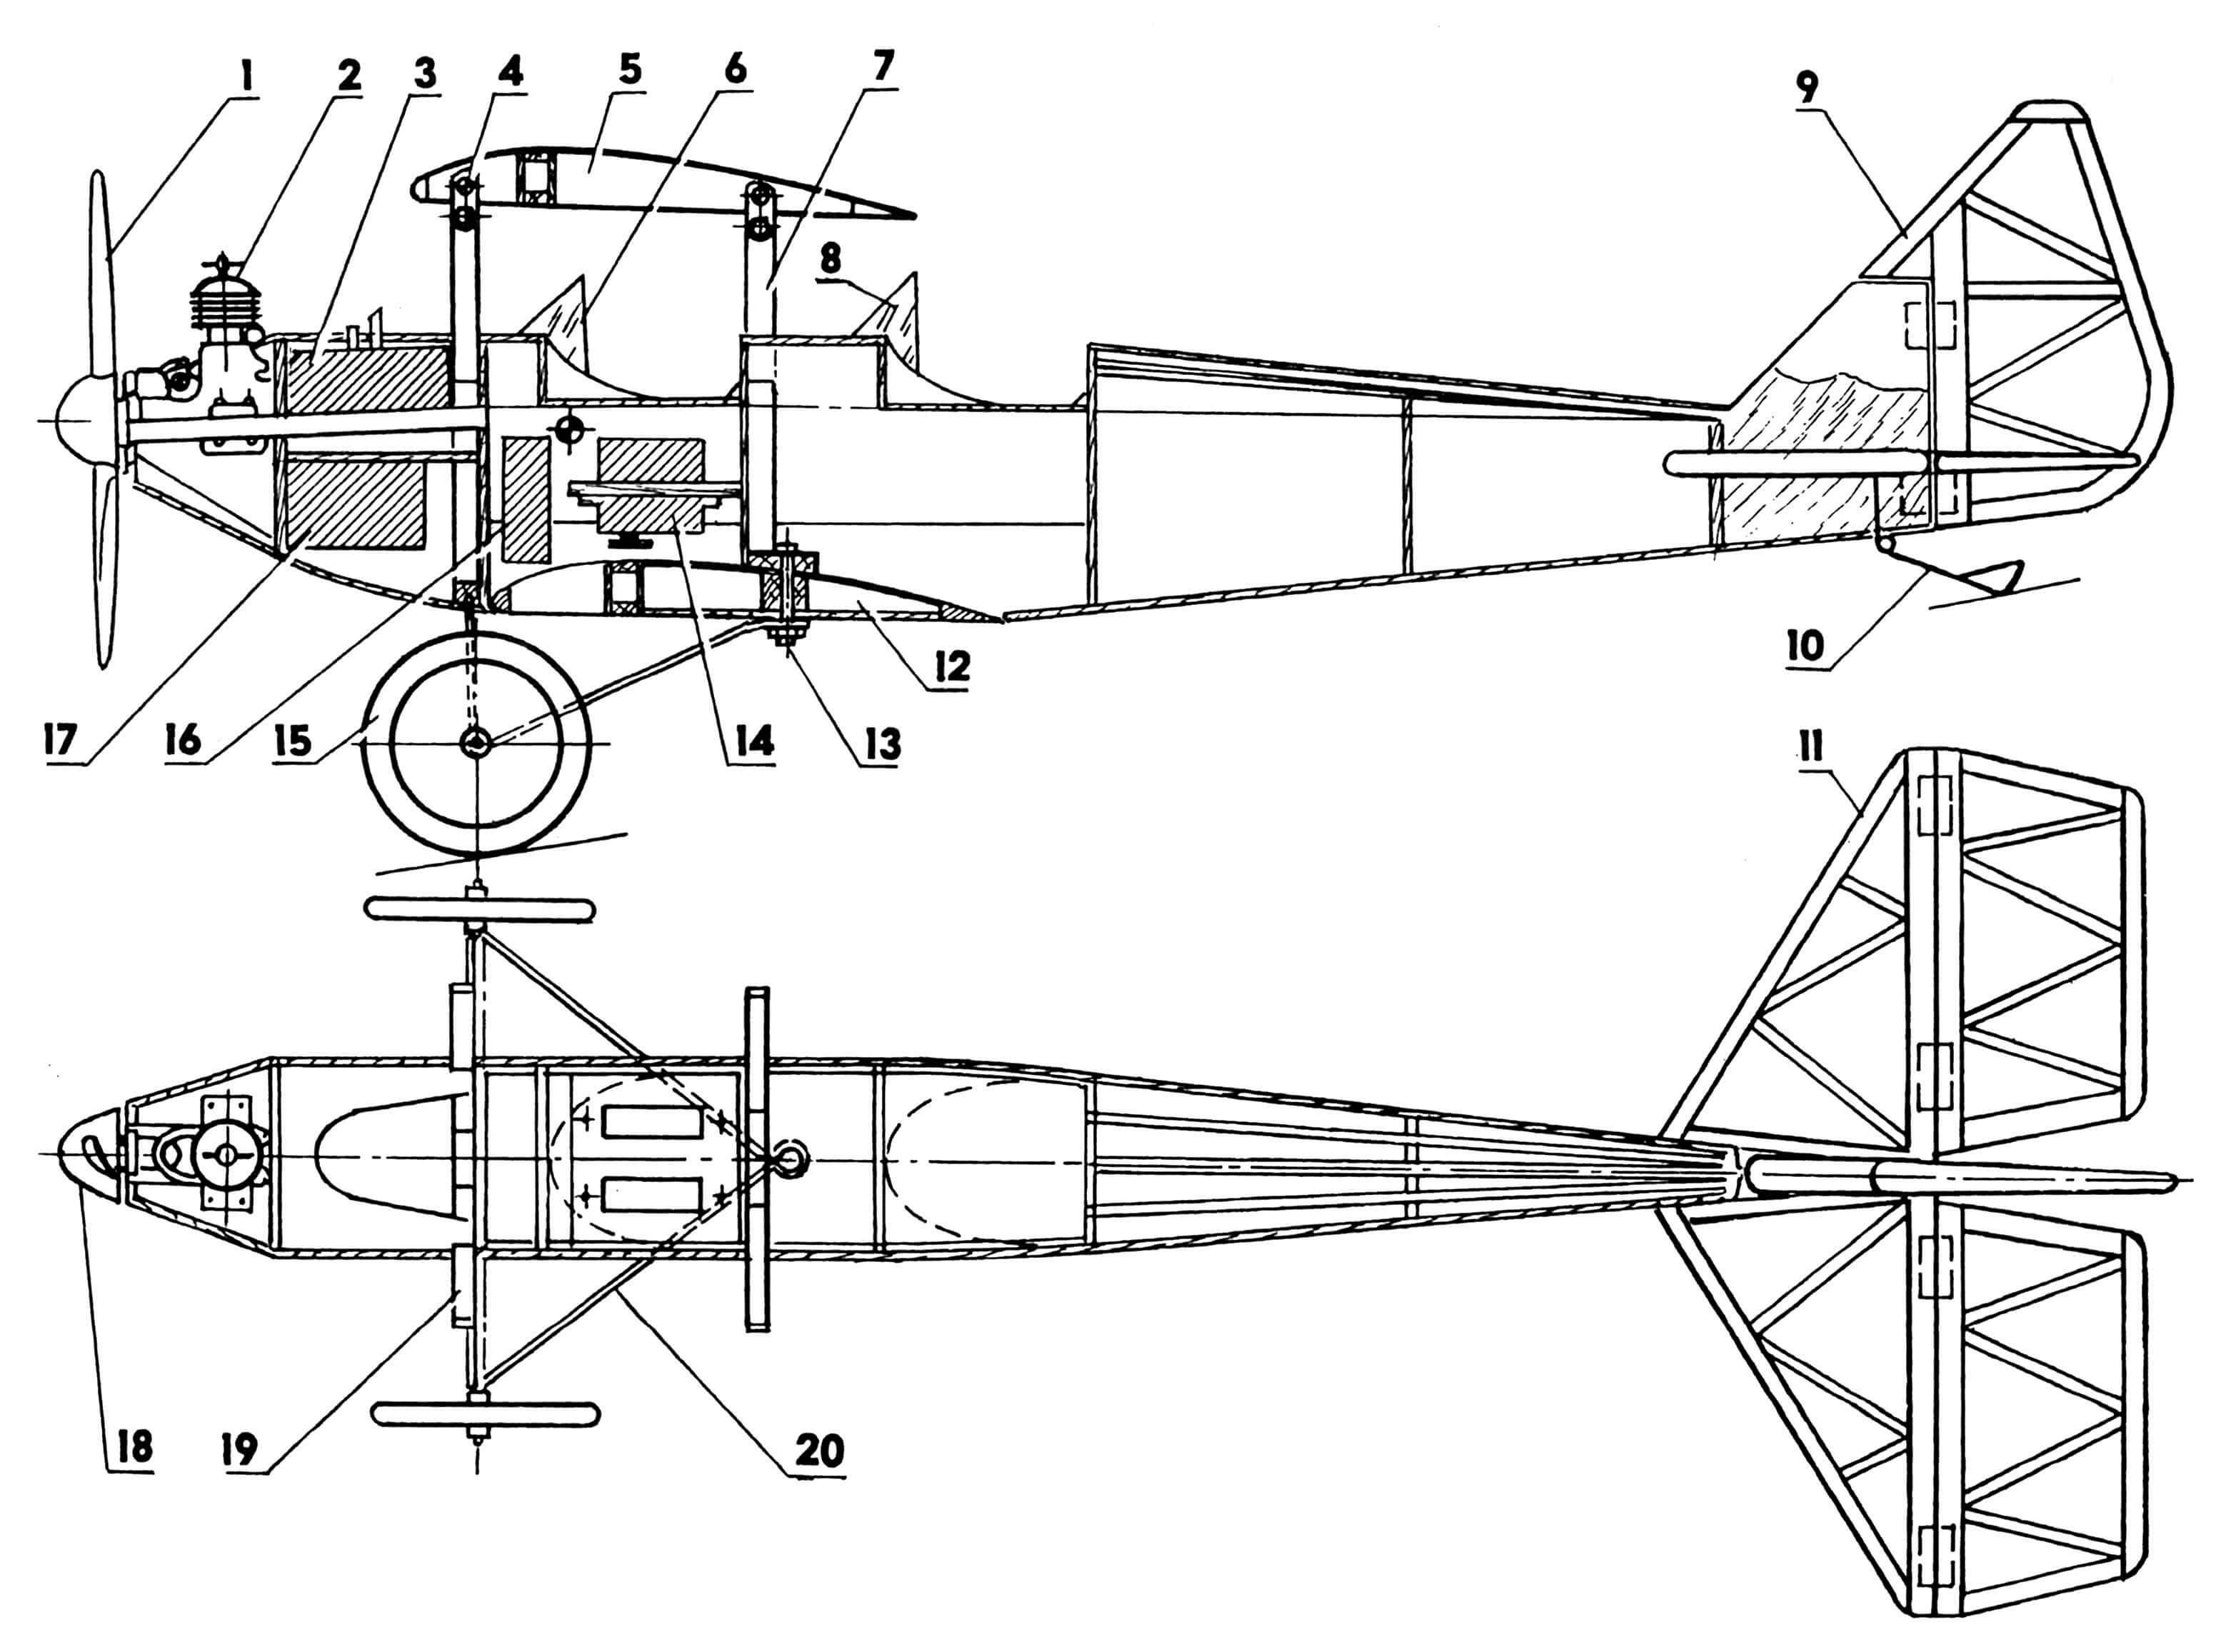 Компоновка модели биплана (на плановой проекции крылья, RC-аппаратура и топливный бак не показаны): 1 — винт воздушный (ø 200, h = 150); 2 — двигатель КМД-2,5; 3 — бак топливный емкостью 75 мл; 4 — ушко крепления верхнего крыла (дюралюминий s1,5); 5 — крыло модели, верхнее; 6,8 — козырьки «кабин»; 7 — стойка крепления верхнего крыла, задняя; 9 — руль направления; 10 — костыль хвостовой (проволока ОВС ø2); 11 — оперение горизонтальное; 12 — крыло нижнее; 13 — болт М3 с гайкой крепления нижнего крыла и подкосов стоек шасси; 14 — машинка рулевая; 15 — колесо; 16 — приемник радиоаппаратуры дистанционного управления; 17 — блок аккумуляторов; 18 — кок воздушного винта; 19 — стойка крепления верхнего крыла, передняя; 20 — подкос стойки шасси.